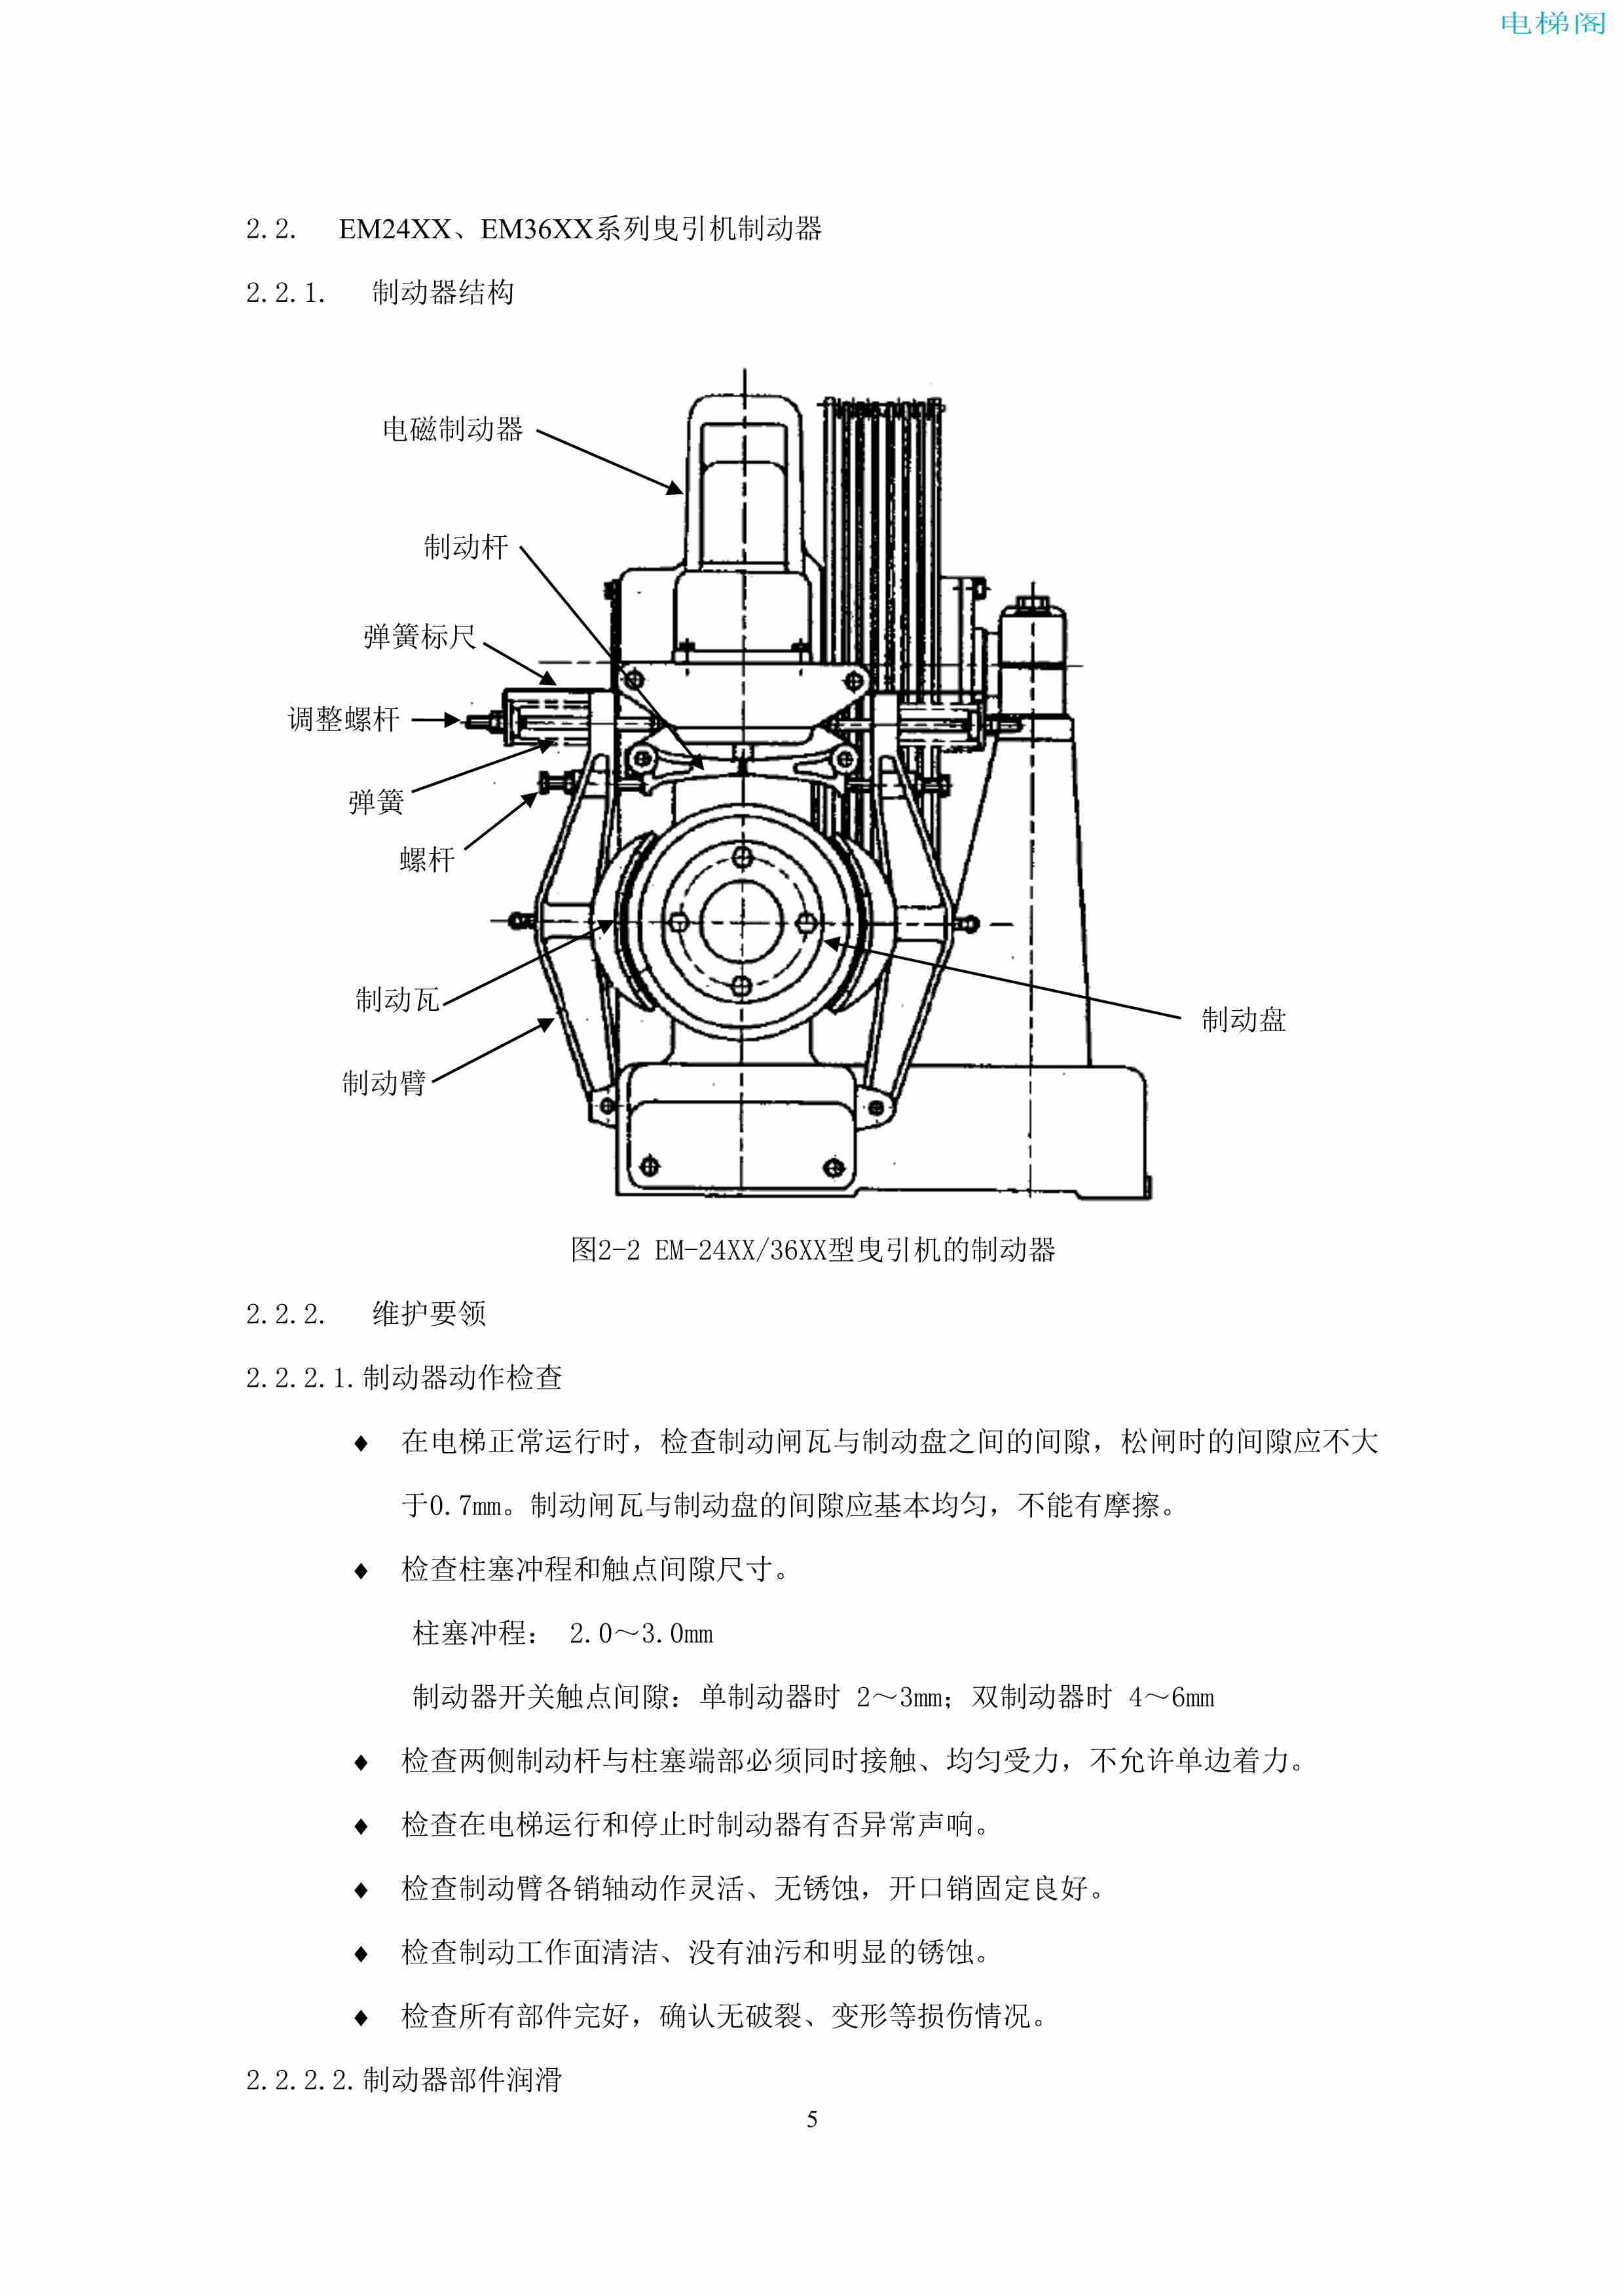 上海三菱电梯有限公司电梯制动器维护作业要领汇编_7.jpg